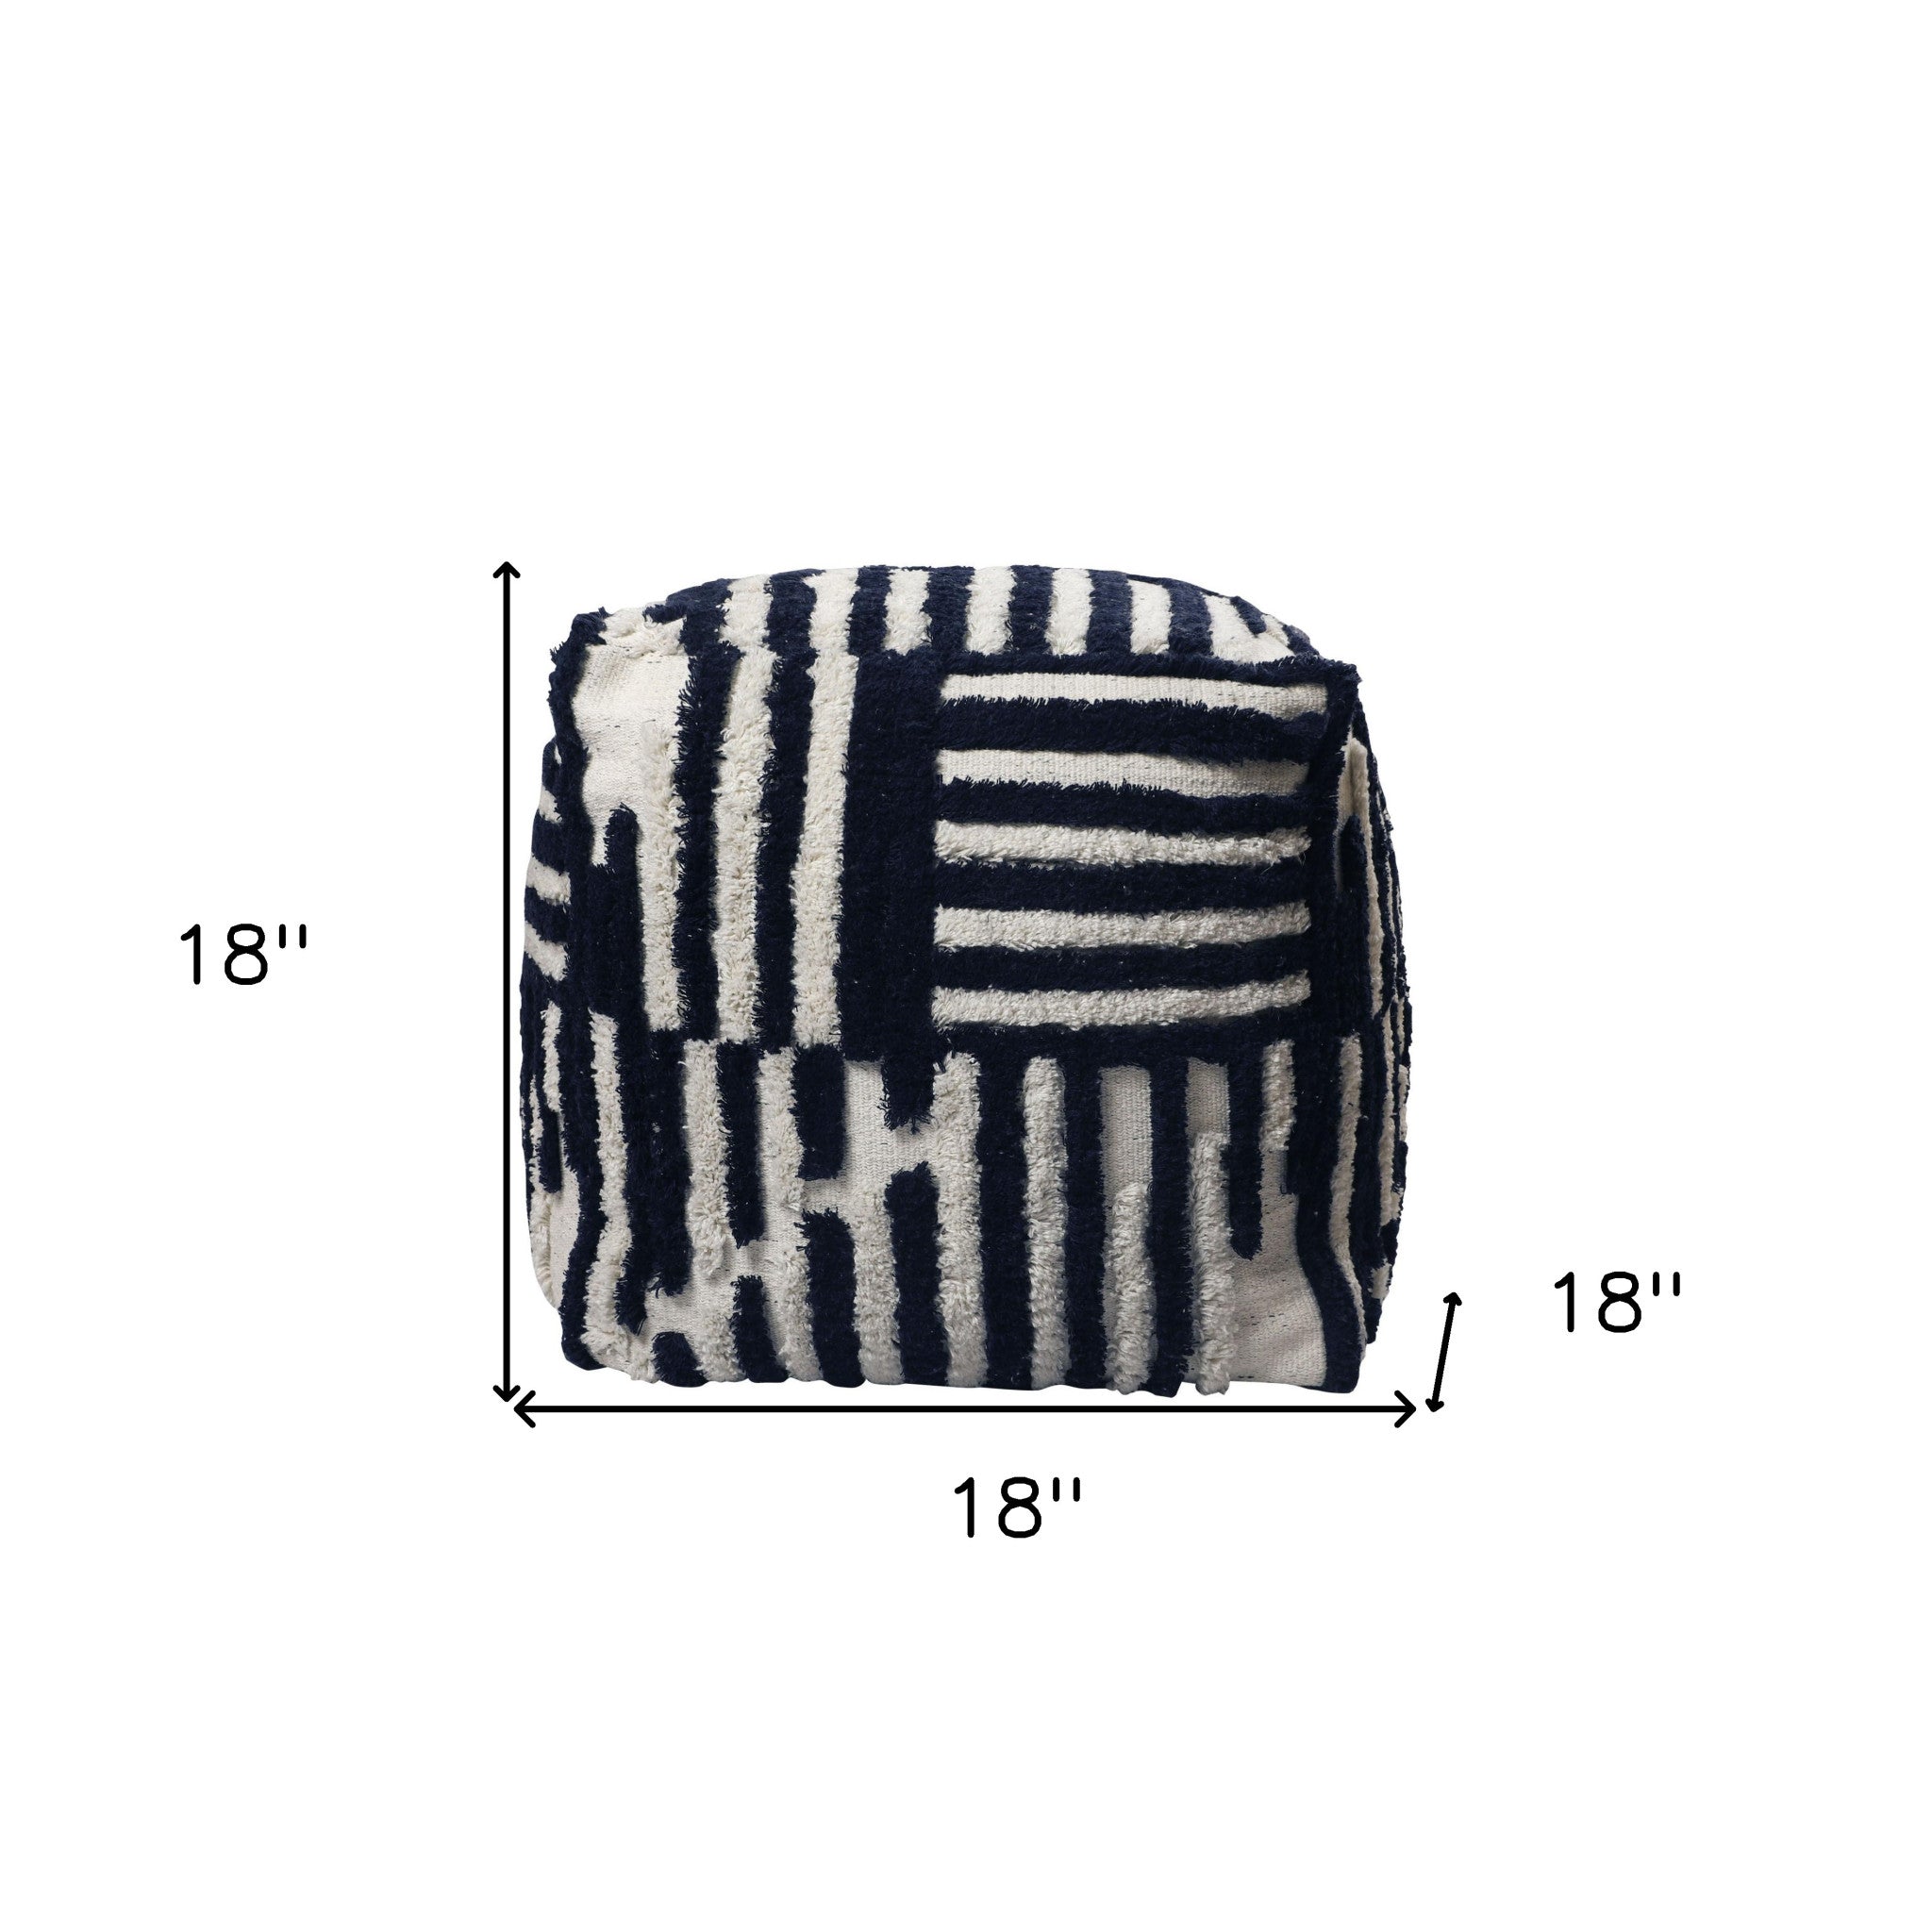 18" Blue Cotton Cube Striped Pouf Ottoman